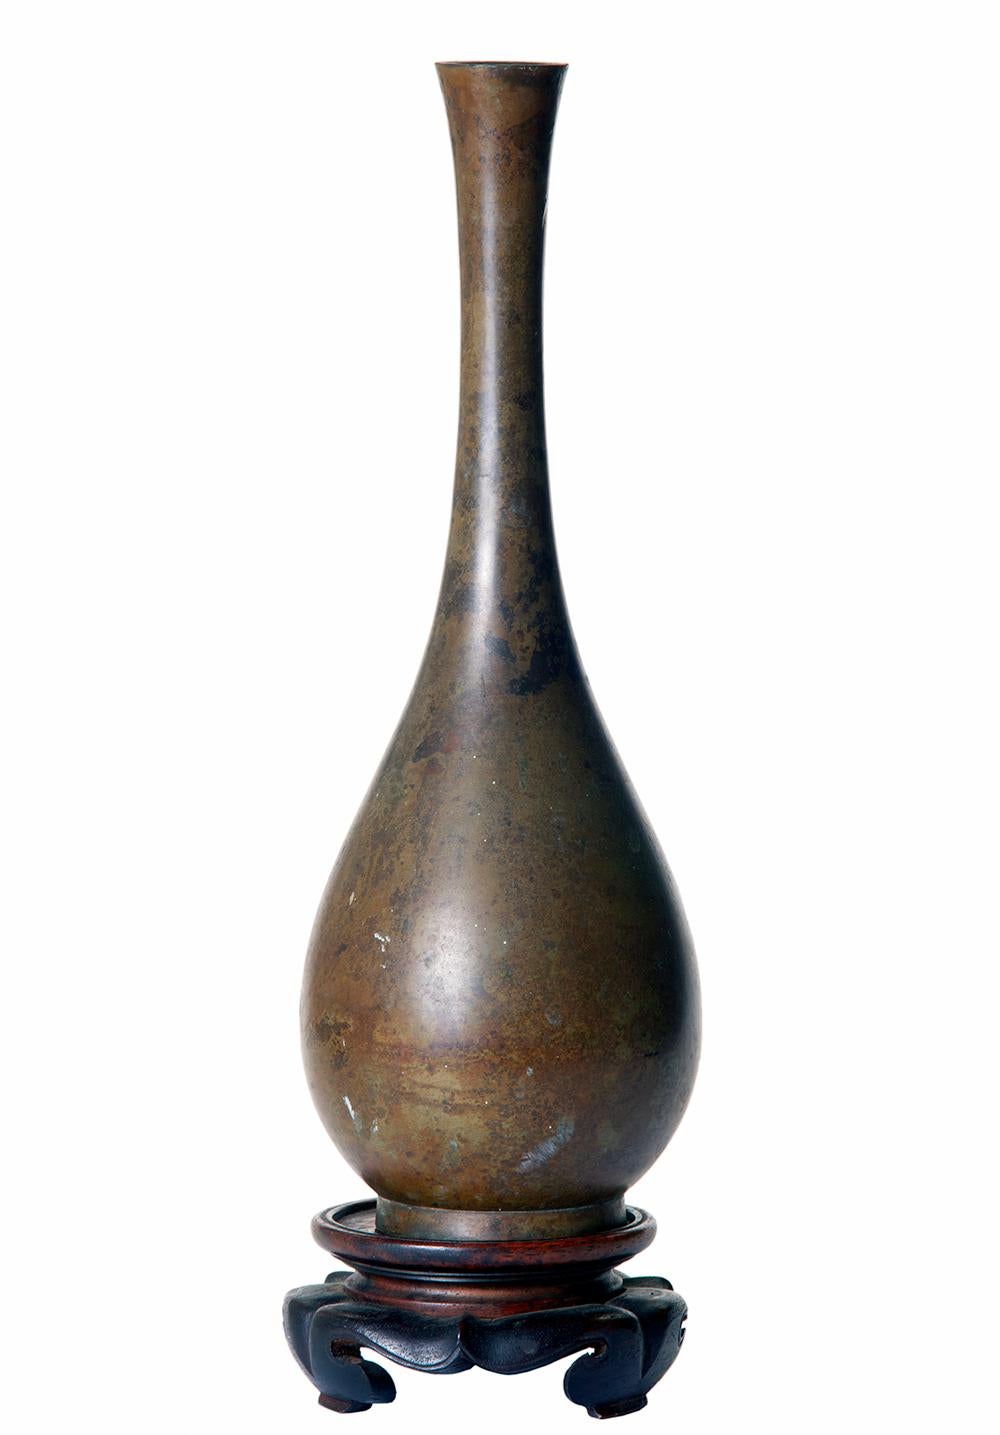 Grand vase à bourgeons en bronze asiatique avec une main lisse et mouchetée.
Le vase élancé repose sur un socle en bois de rose sculpté à la main.